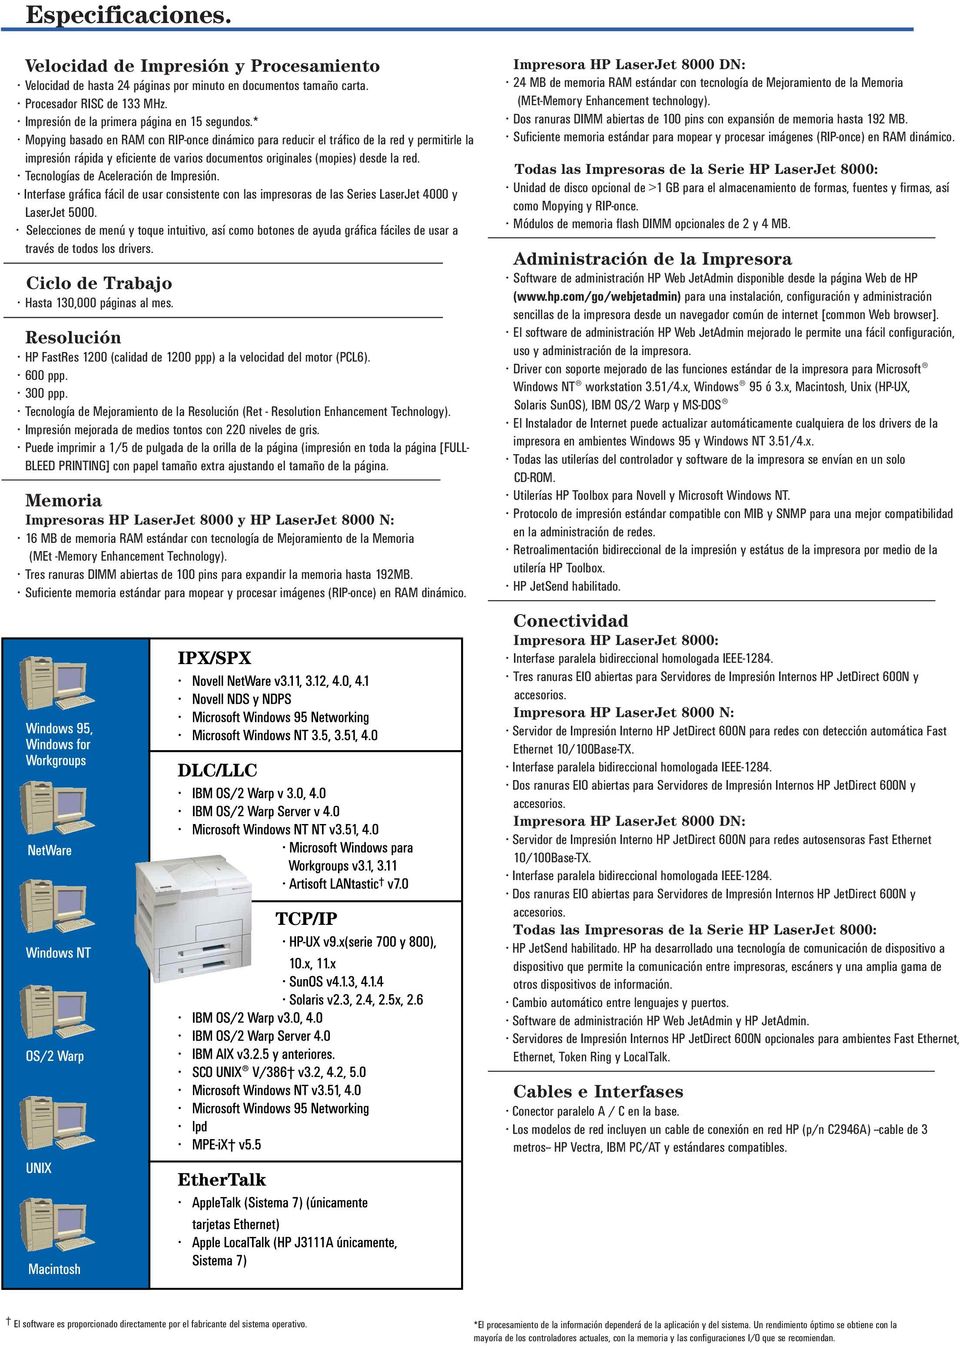 Tecnologías de Aceleración de Impresión. Interfase gráfica fácil de usar consistente con las impresoras de las Series LaserJet 4000 y LaserJet 5000.